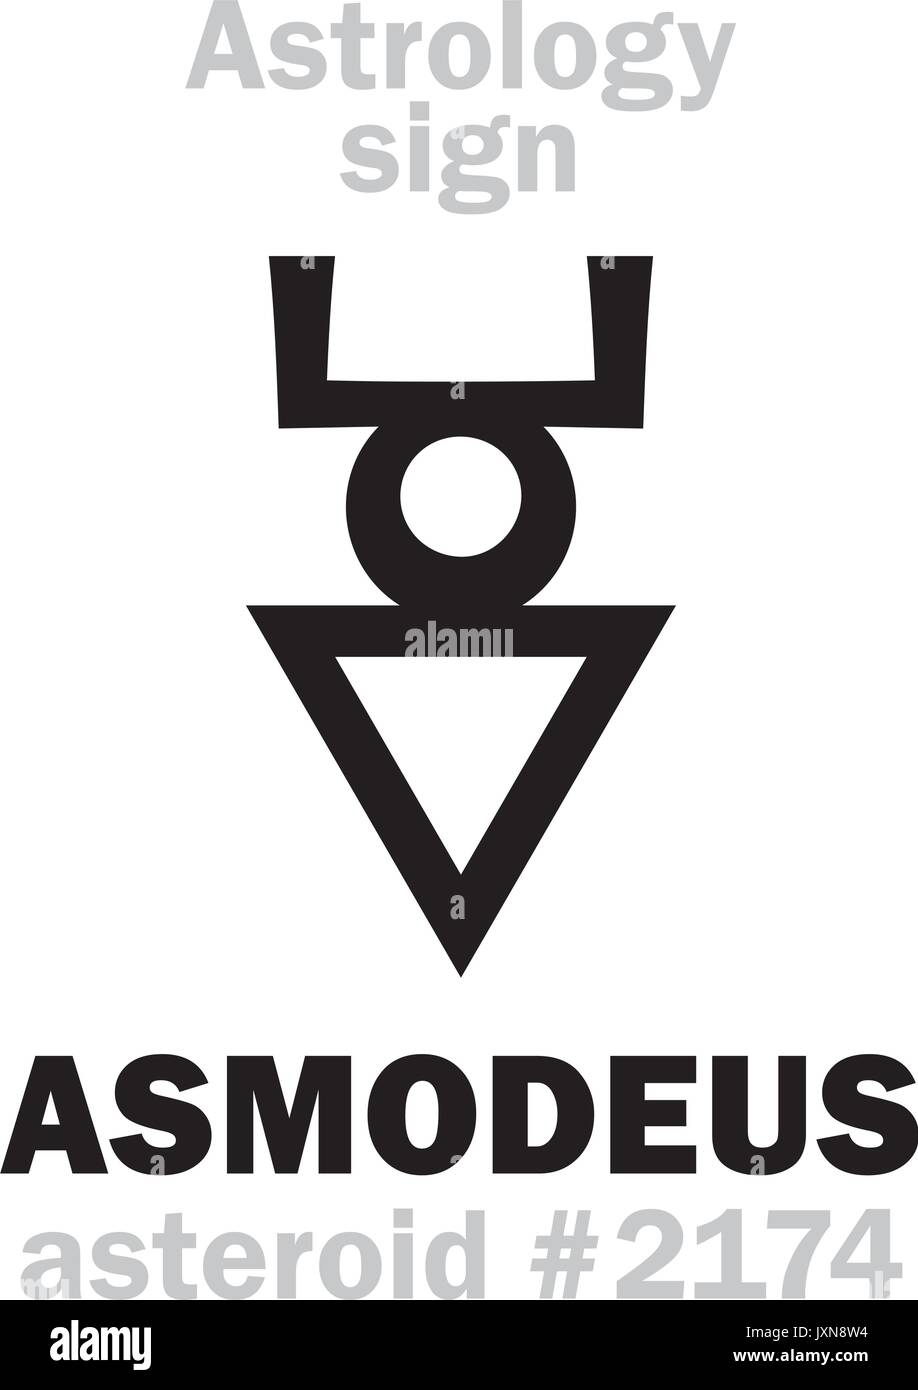 Astrologie Alphabet: ASMODEUS (Hashmedai), Asteroid Nr. 2174. Hieroglyphen Zeichen Zeichen (Symbol). Stock Vektor